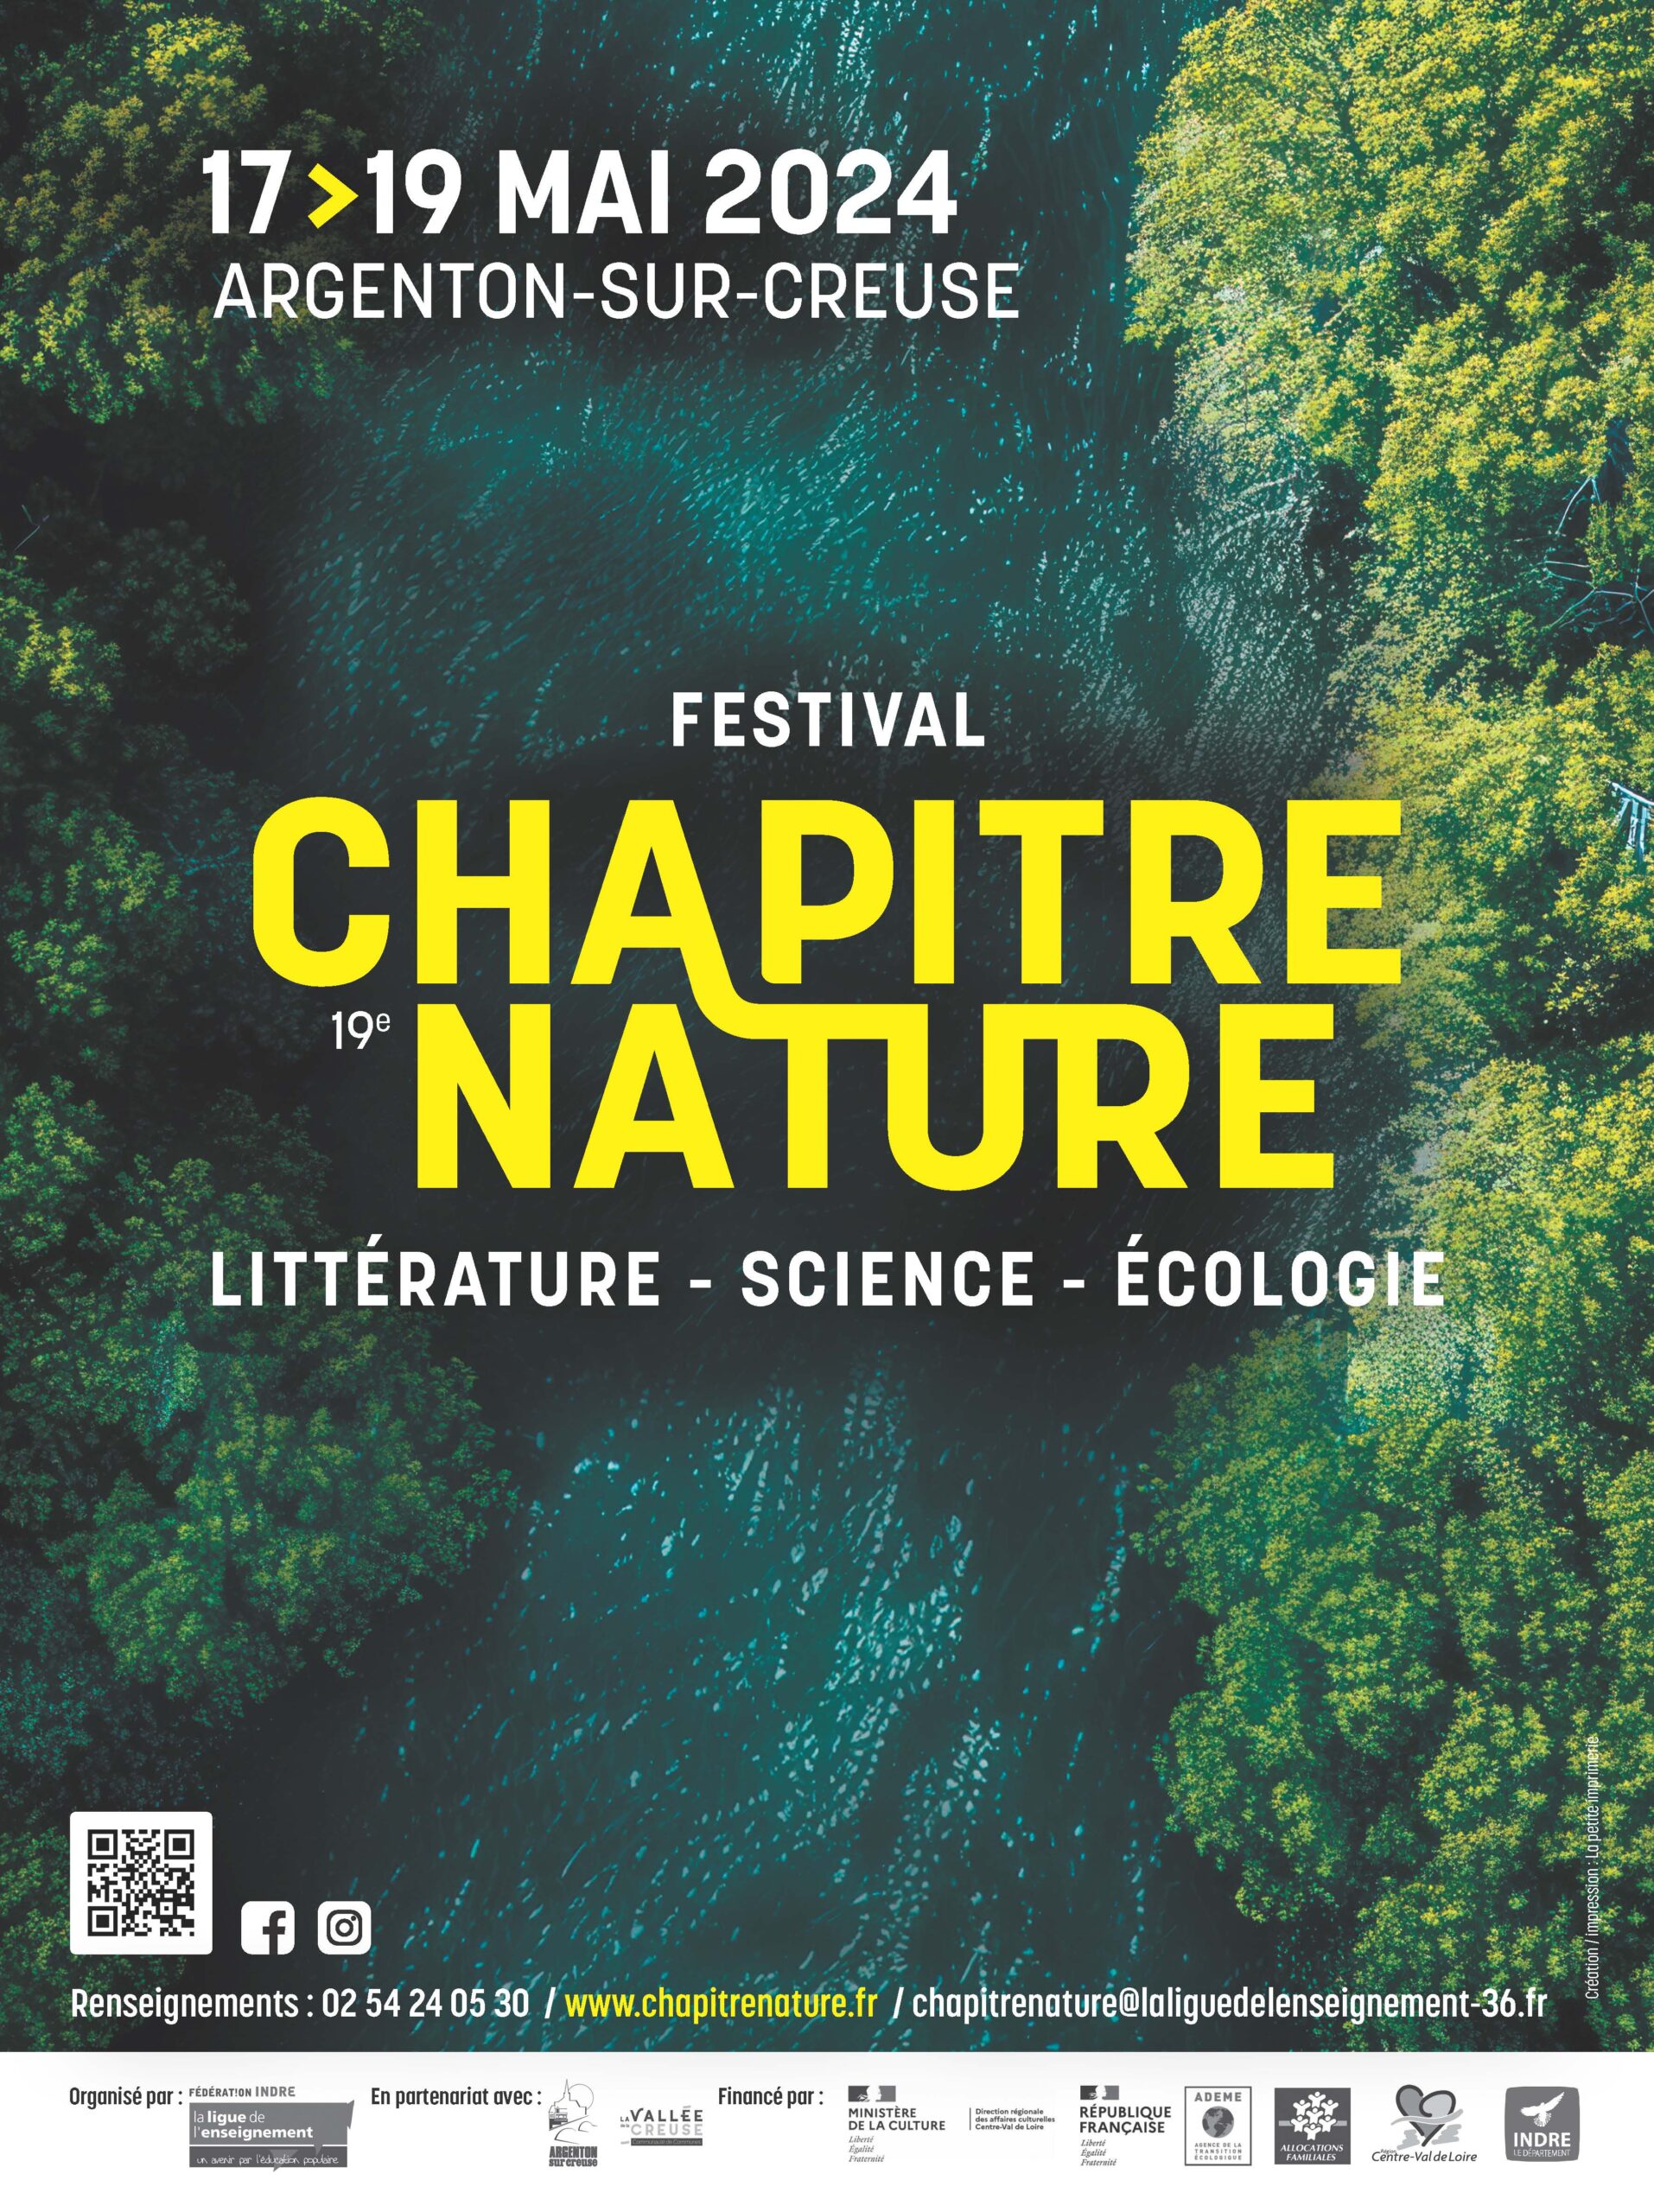 Festival Chapitre Nature, littérature - science - écologie - du 17 au 19 mai 2024